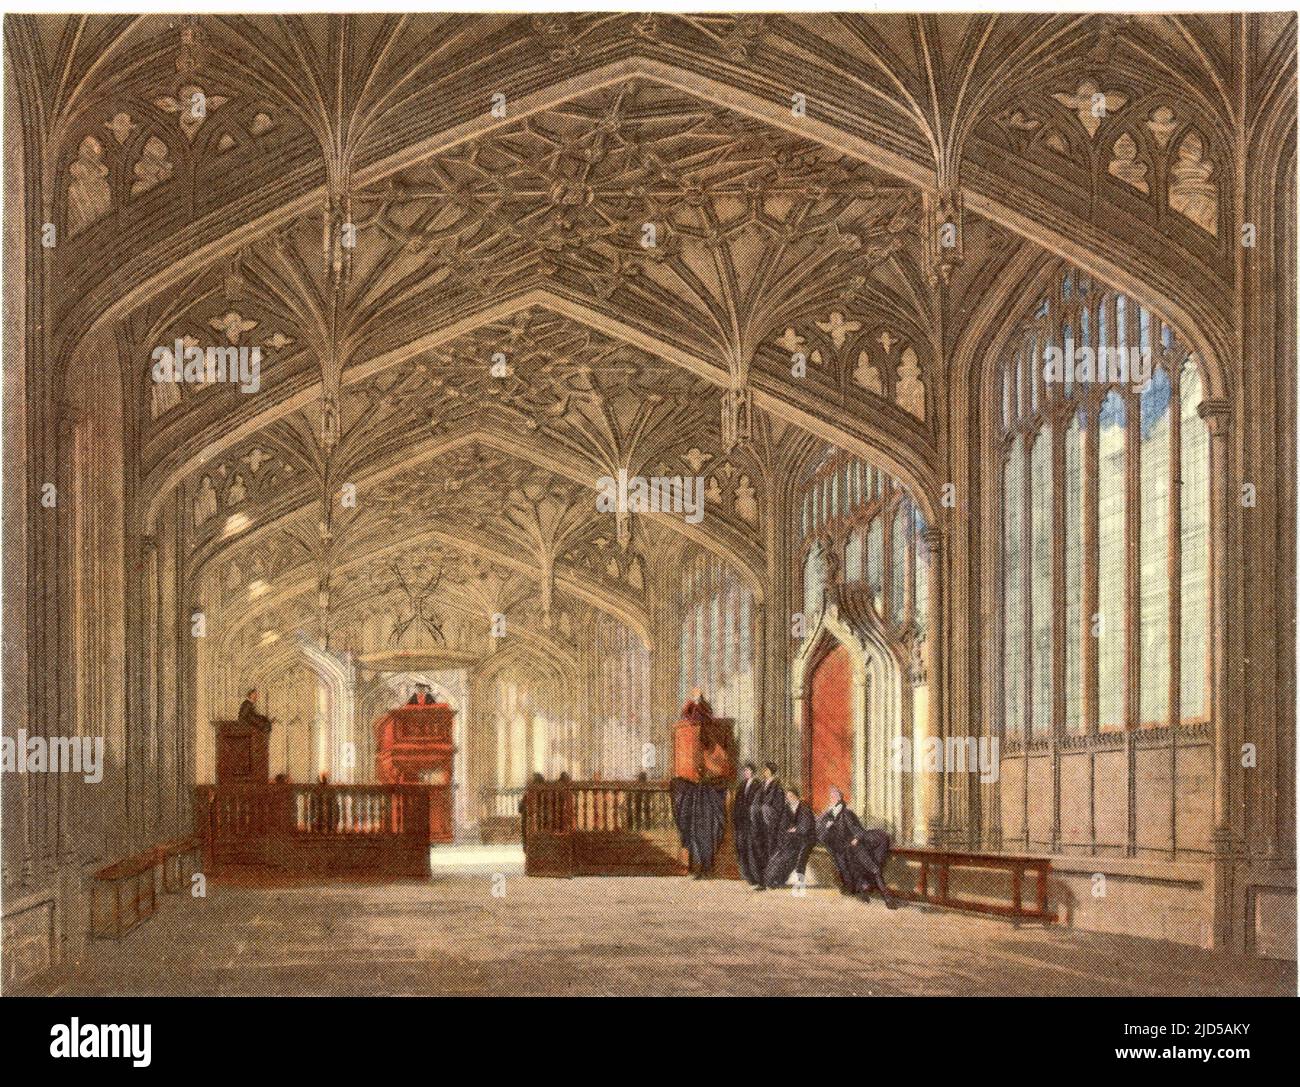 L'École Divine, 1814. La Divinity School est un bâtiment médiéval et une salle dans le style perpendiculaire à Oxford, en Angleterre, qui fait partie de l'Université d'Oxford. Construit entre 1427 et 1483, le plafond se compose d'une voûte élaborée de lierne avec bossages, conçue par William Orchard (fl1468-d1504) dans les années 1480 Un tirage de 'A History of the University of Oxford, its Colleges, Halls, and public Buildings', publié par Rudolph Ackermann, 1814. Illustré par Augustus Pugin, F. Mackenzie et d'autres. Banque D'Images